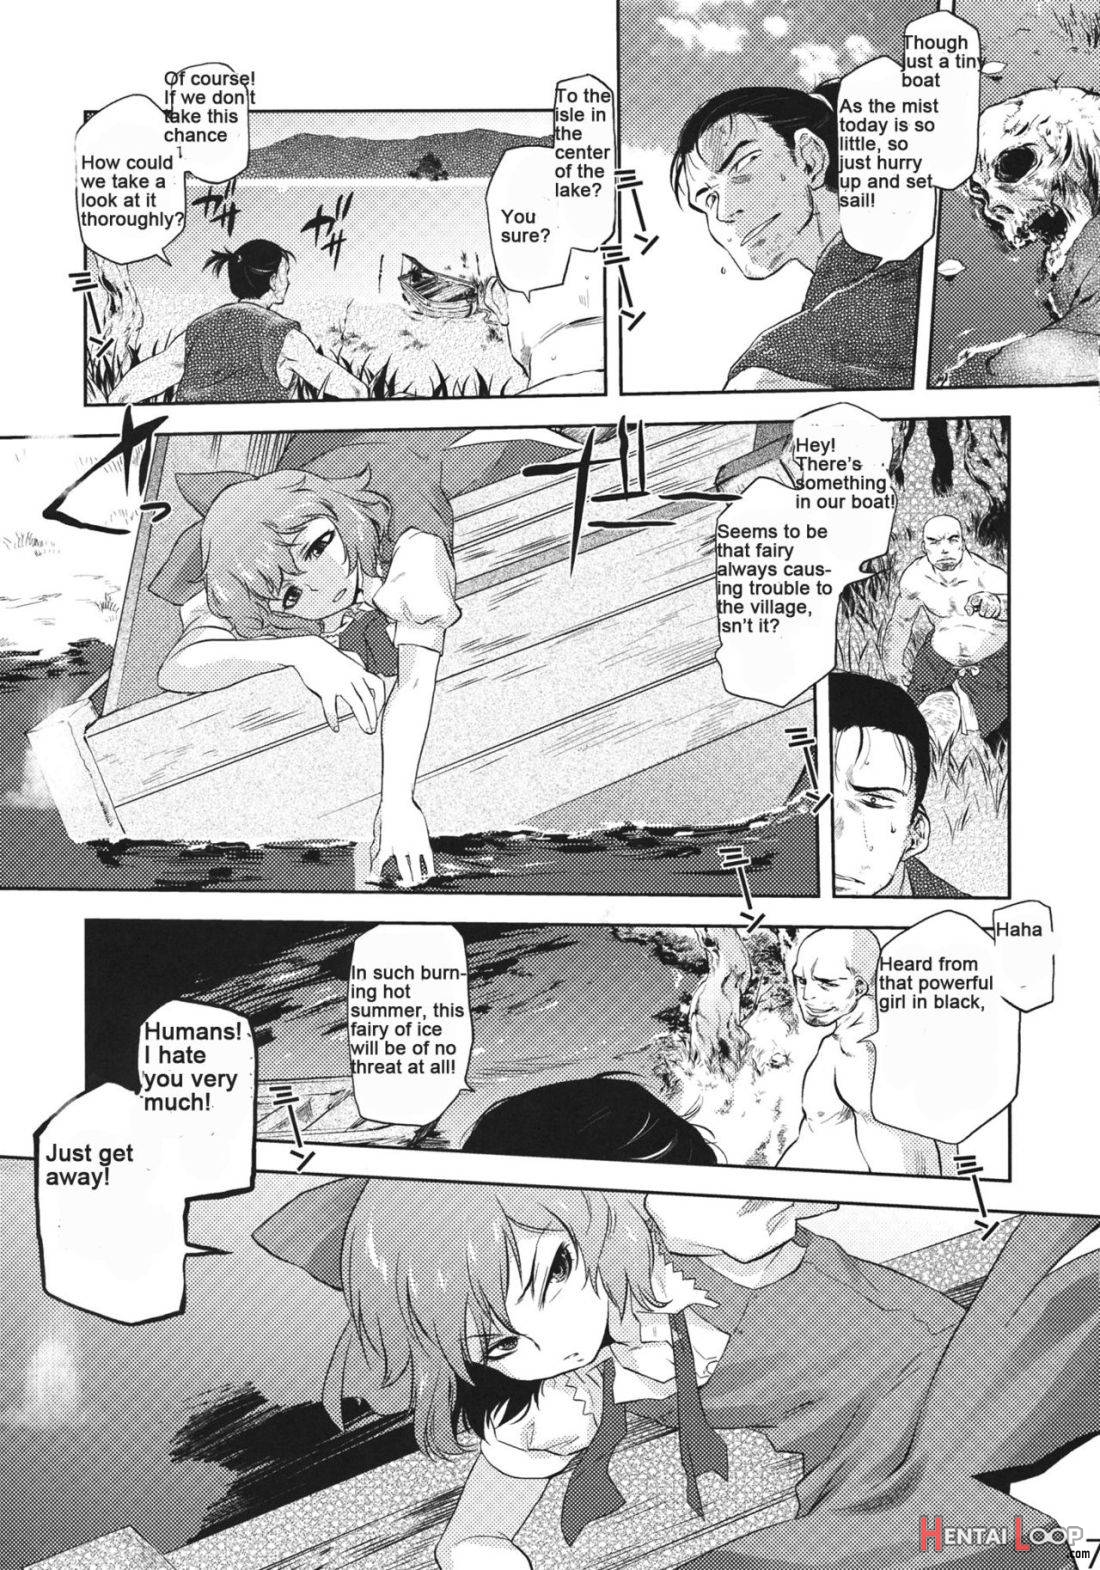 Sekka no Sho page 4